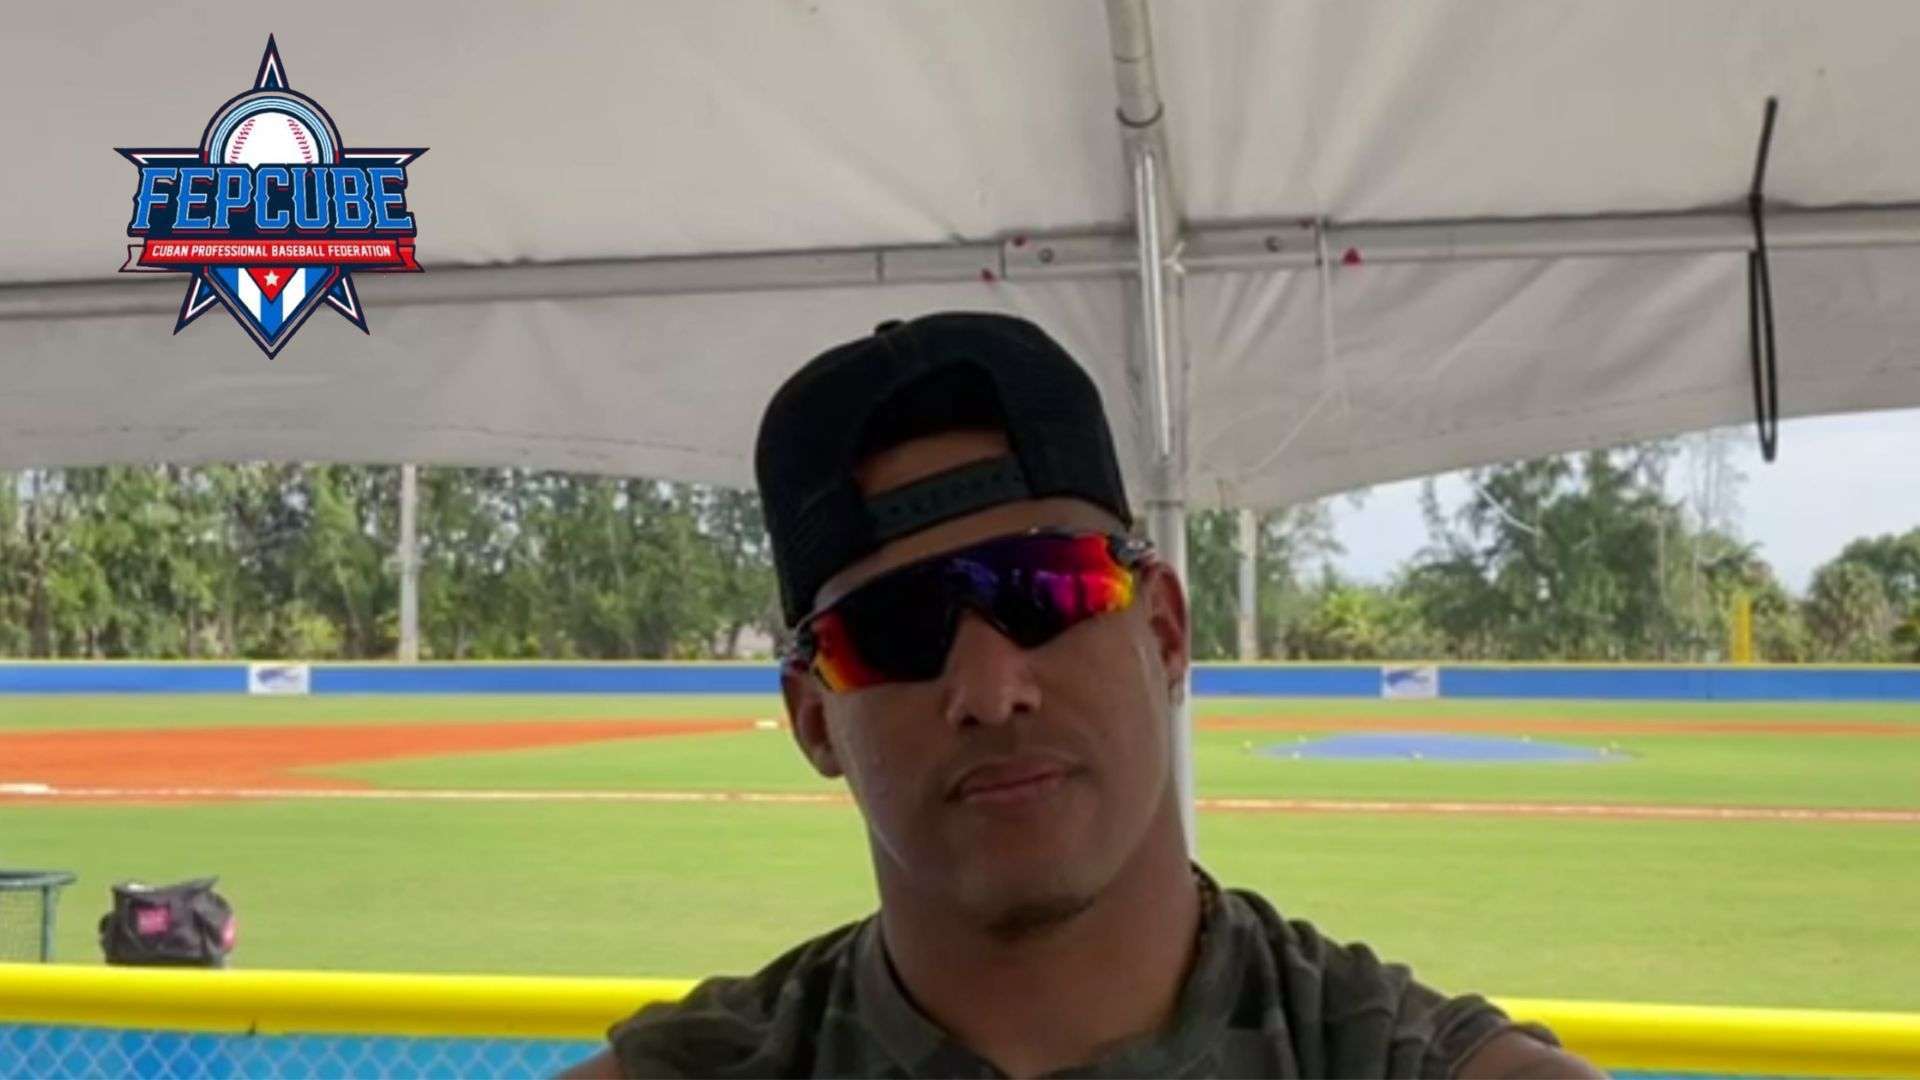 El ex grandes ligas Yunel Escobar dejó saber en su cuenta de Instagram que su participación con la Federación Profesional Cubana de Béisbol (FEPCUBE) llegó a su fin